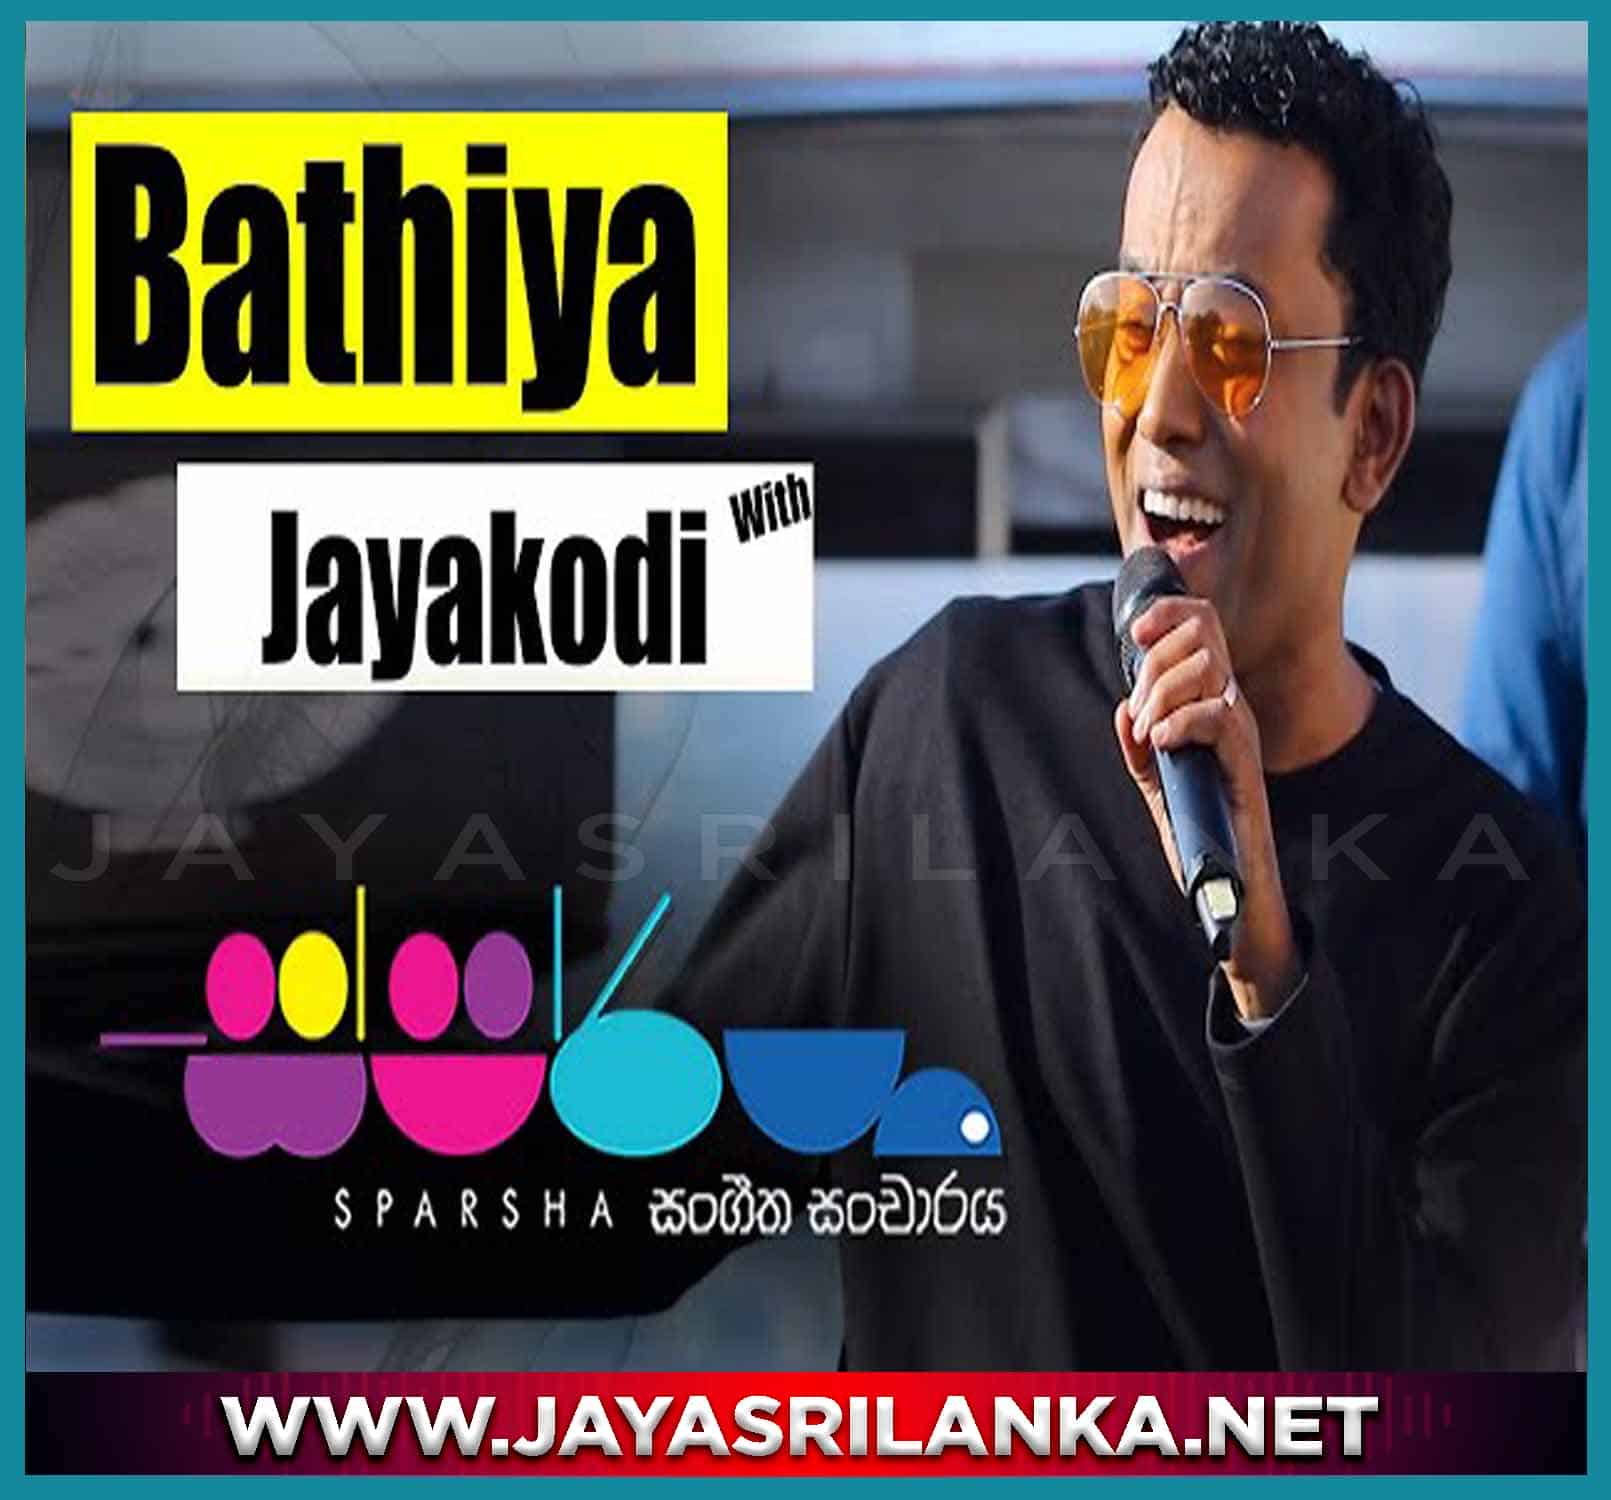 01 - Oba Enna Aye (Sparsha) - Bathiya Jayakody mp3 Image